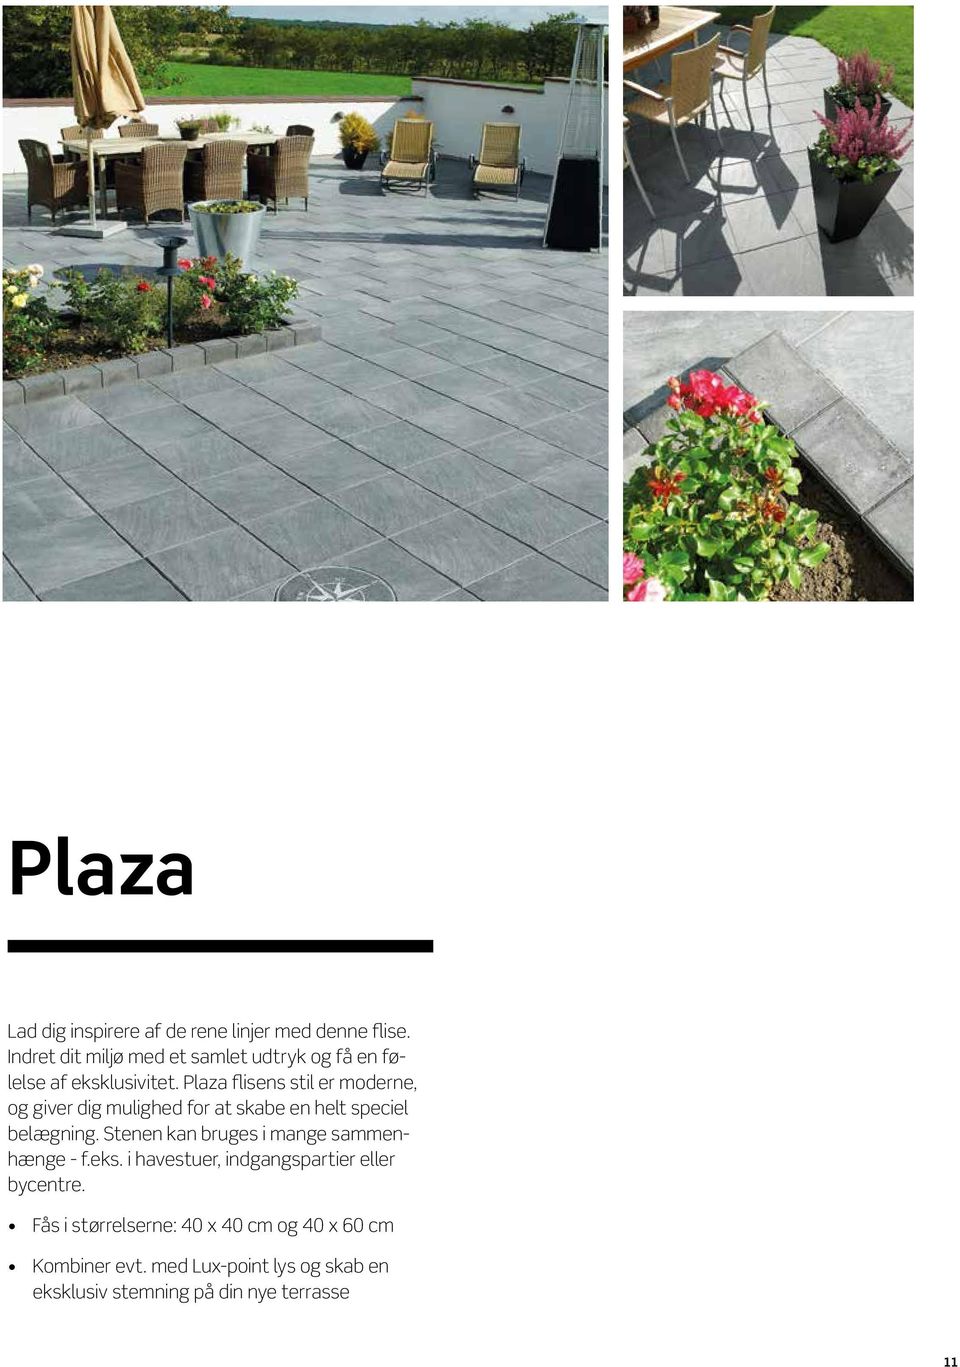 Plaza flisens stil er moderne, og giver dig mulighed for at skabe en helt speciel belægning.